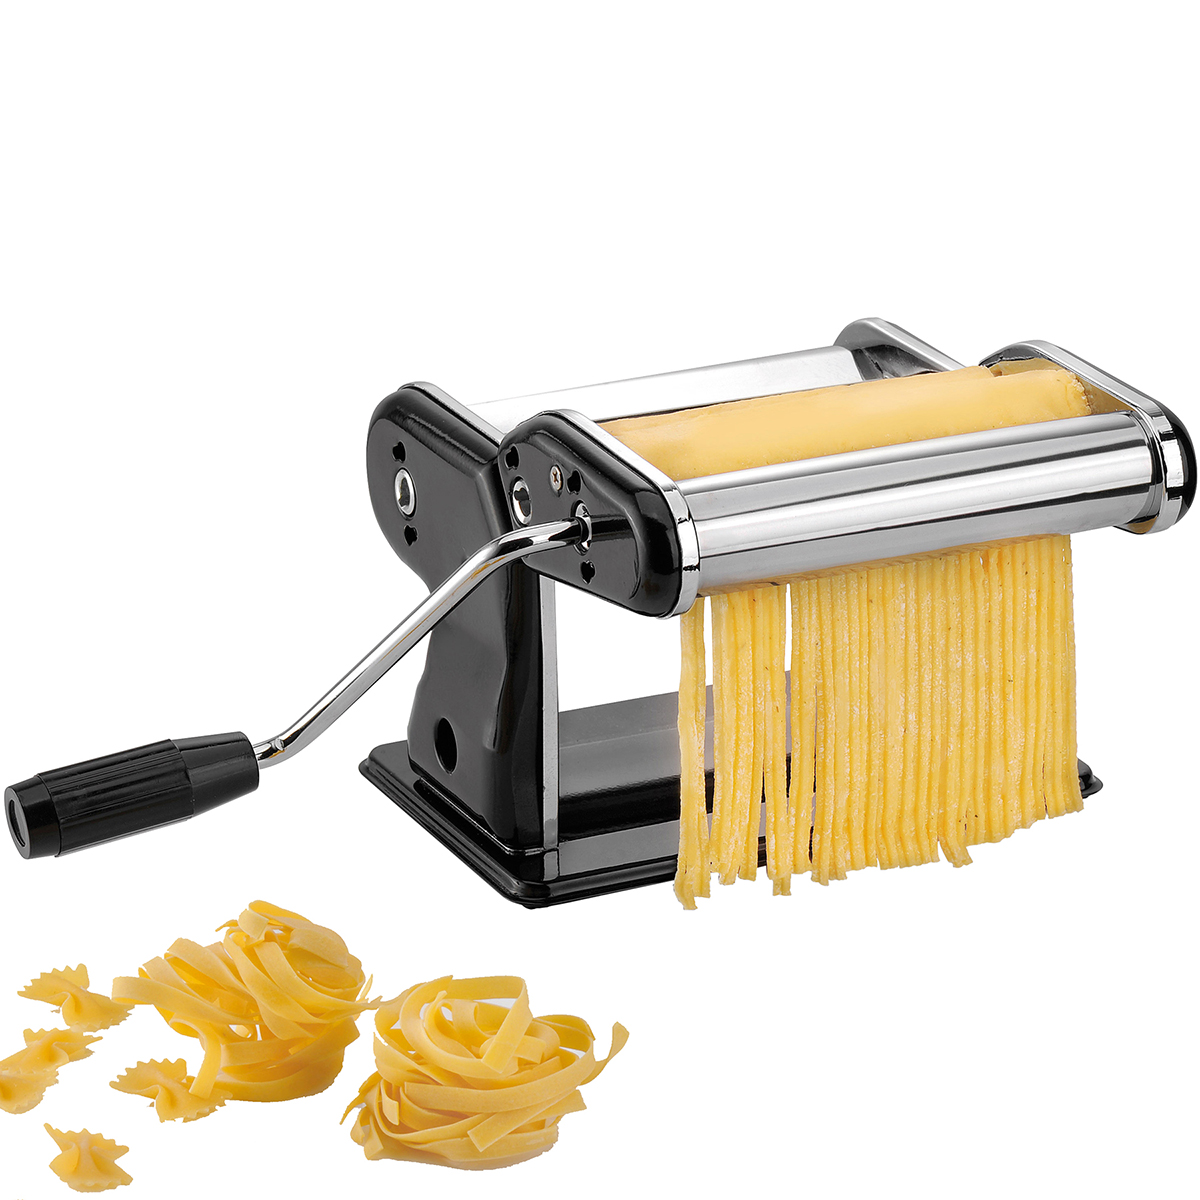 Profi-Pastamaschine PASTA PERFETTA NERO für Lasagne, Tagliolini, Tagliatelle